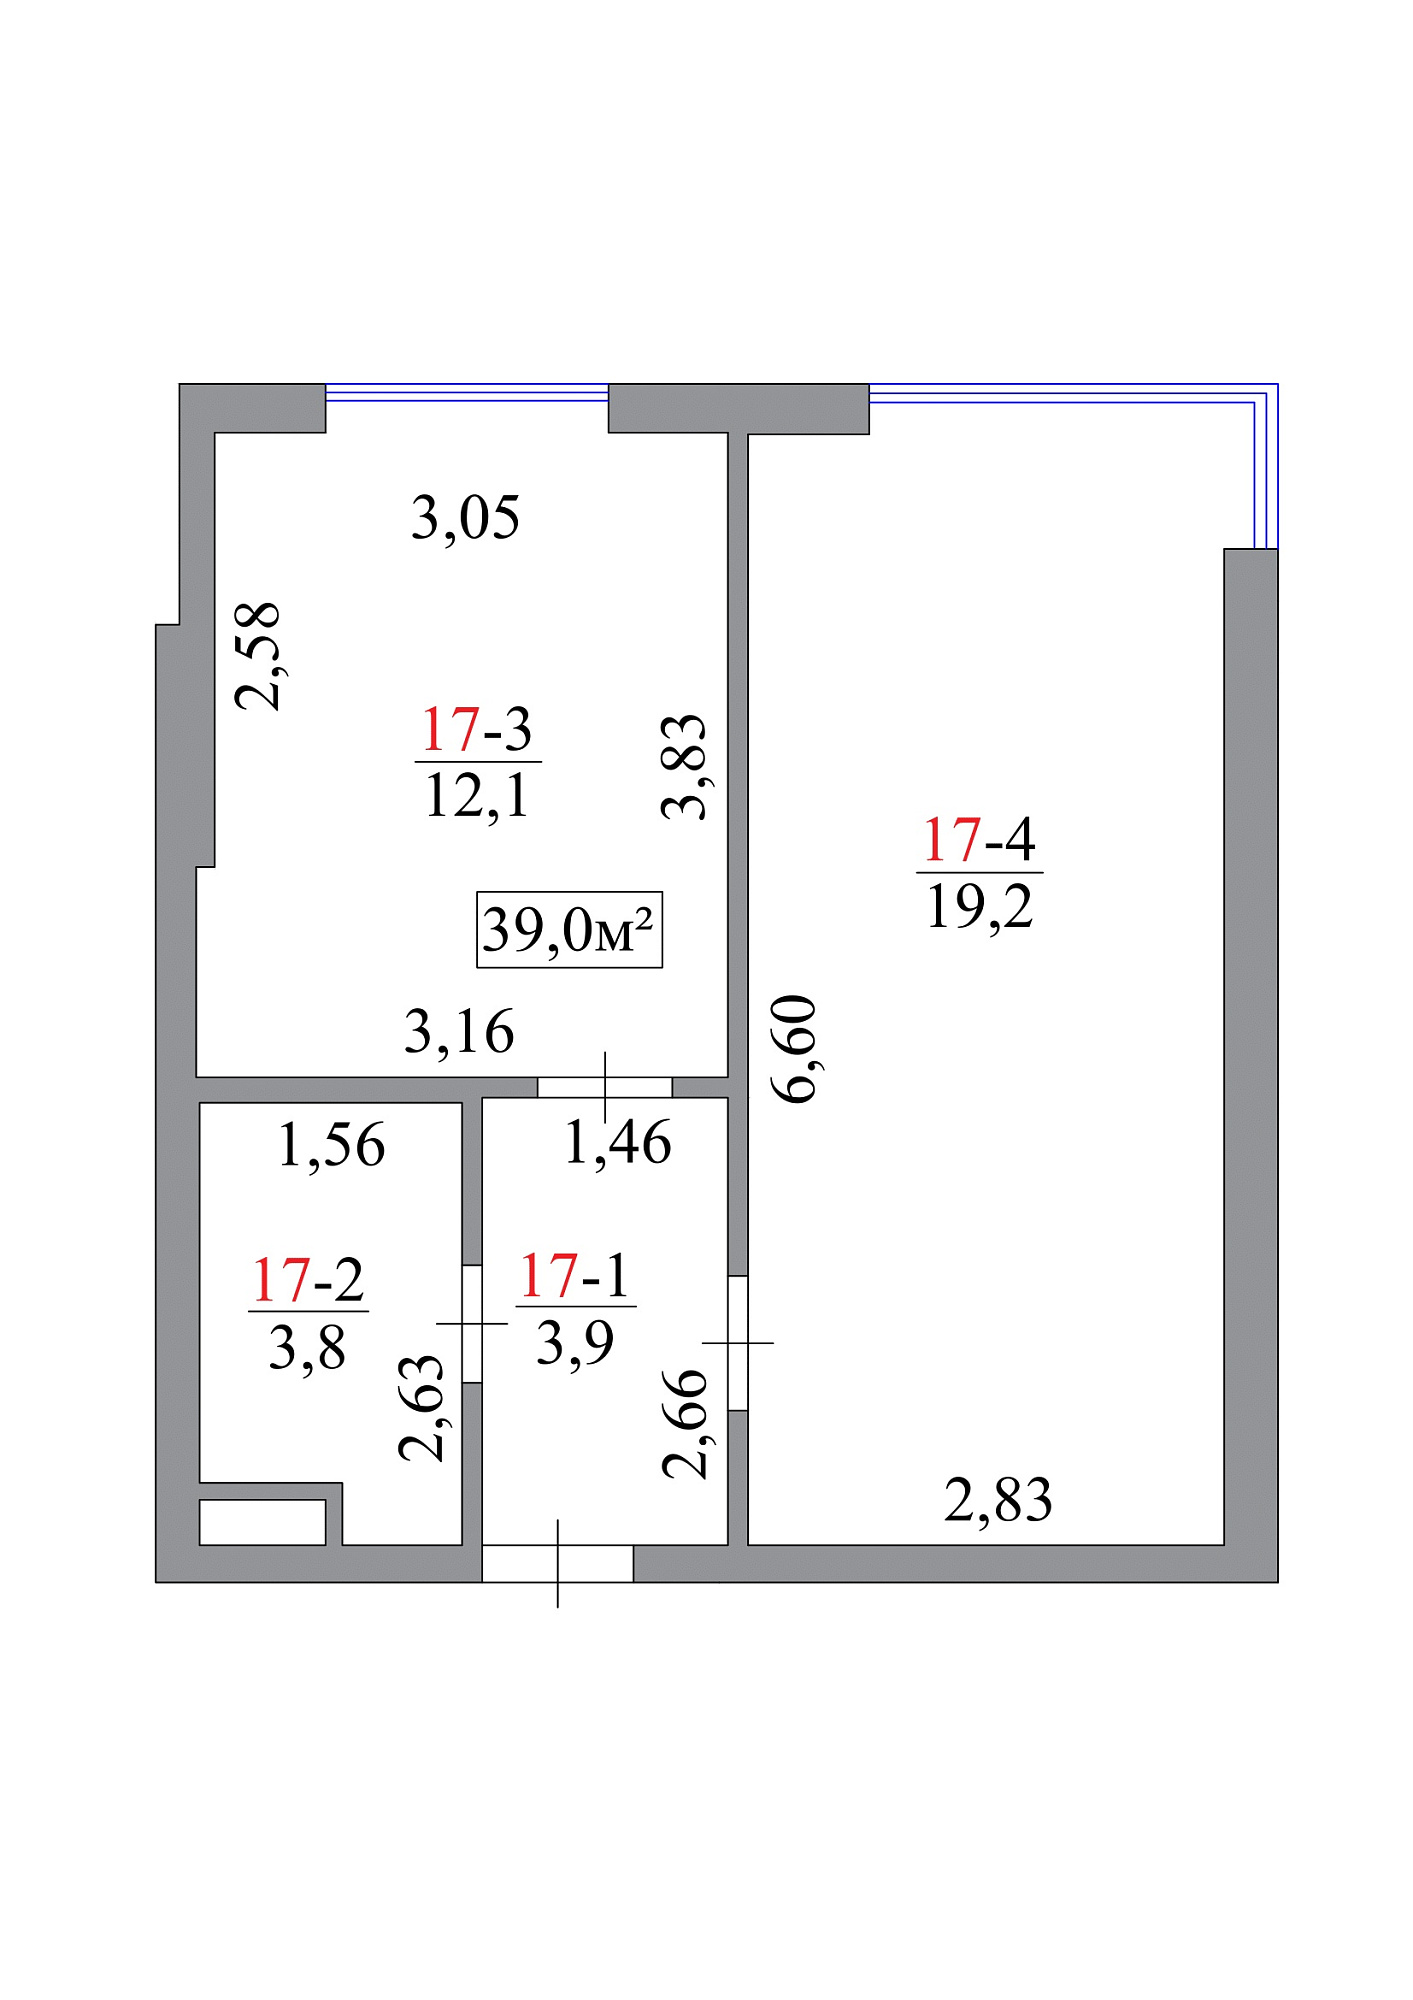 Планировка 1-к квартира площей 39м2, AB-07-02/0016а.